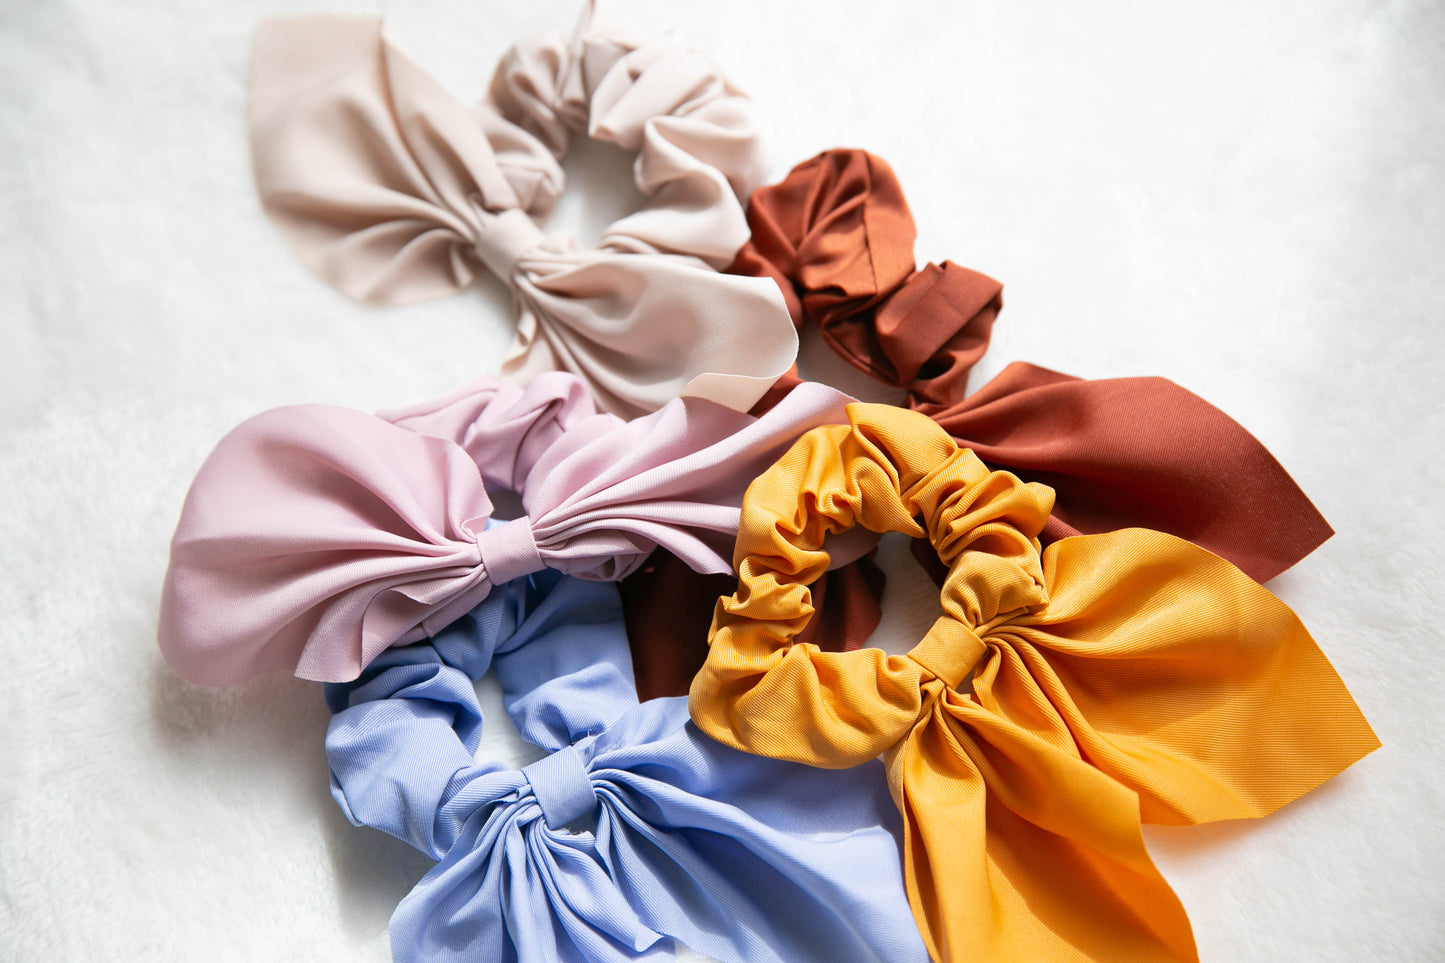 Srunchie Scarf Hair Ties - 5 colors, hair scarf, Elastic Hair Tie Scrunchies, Homemade Scrunchy, Gifts For Her, Scrunchie Scarf, scarf hair accessory